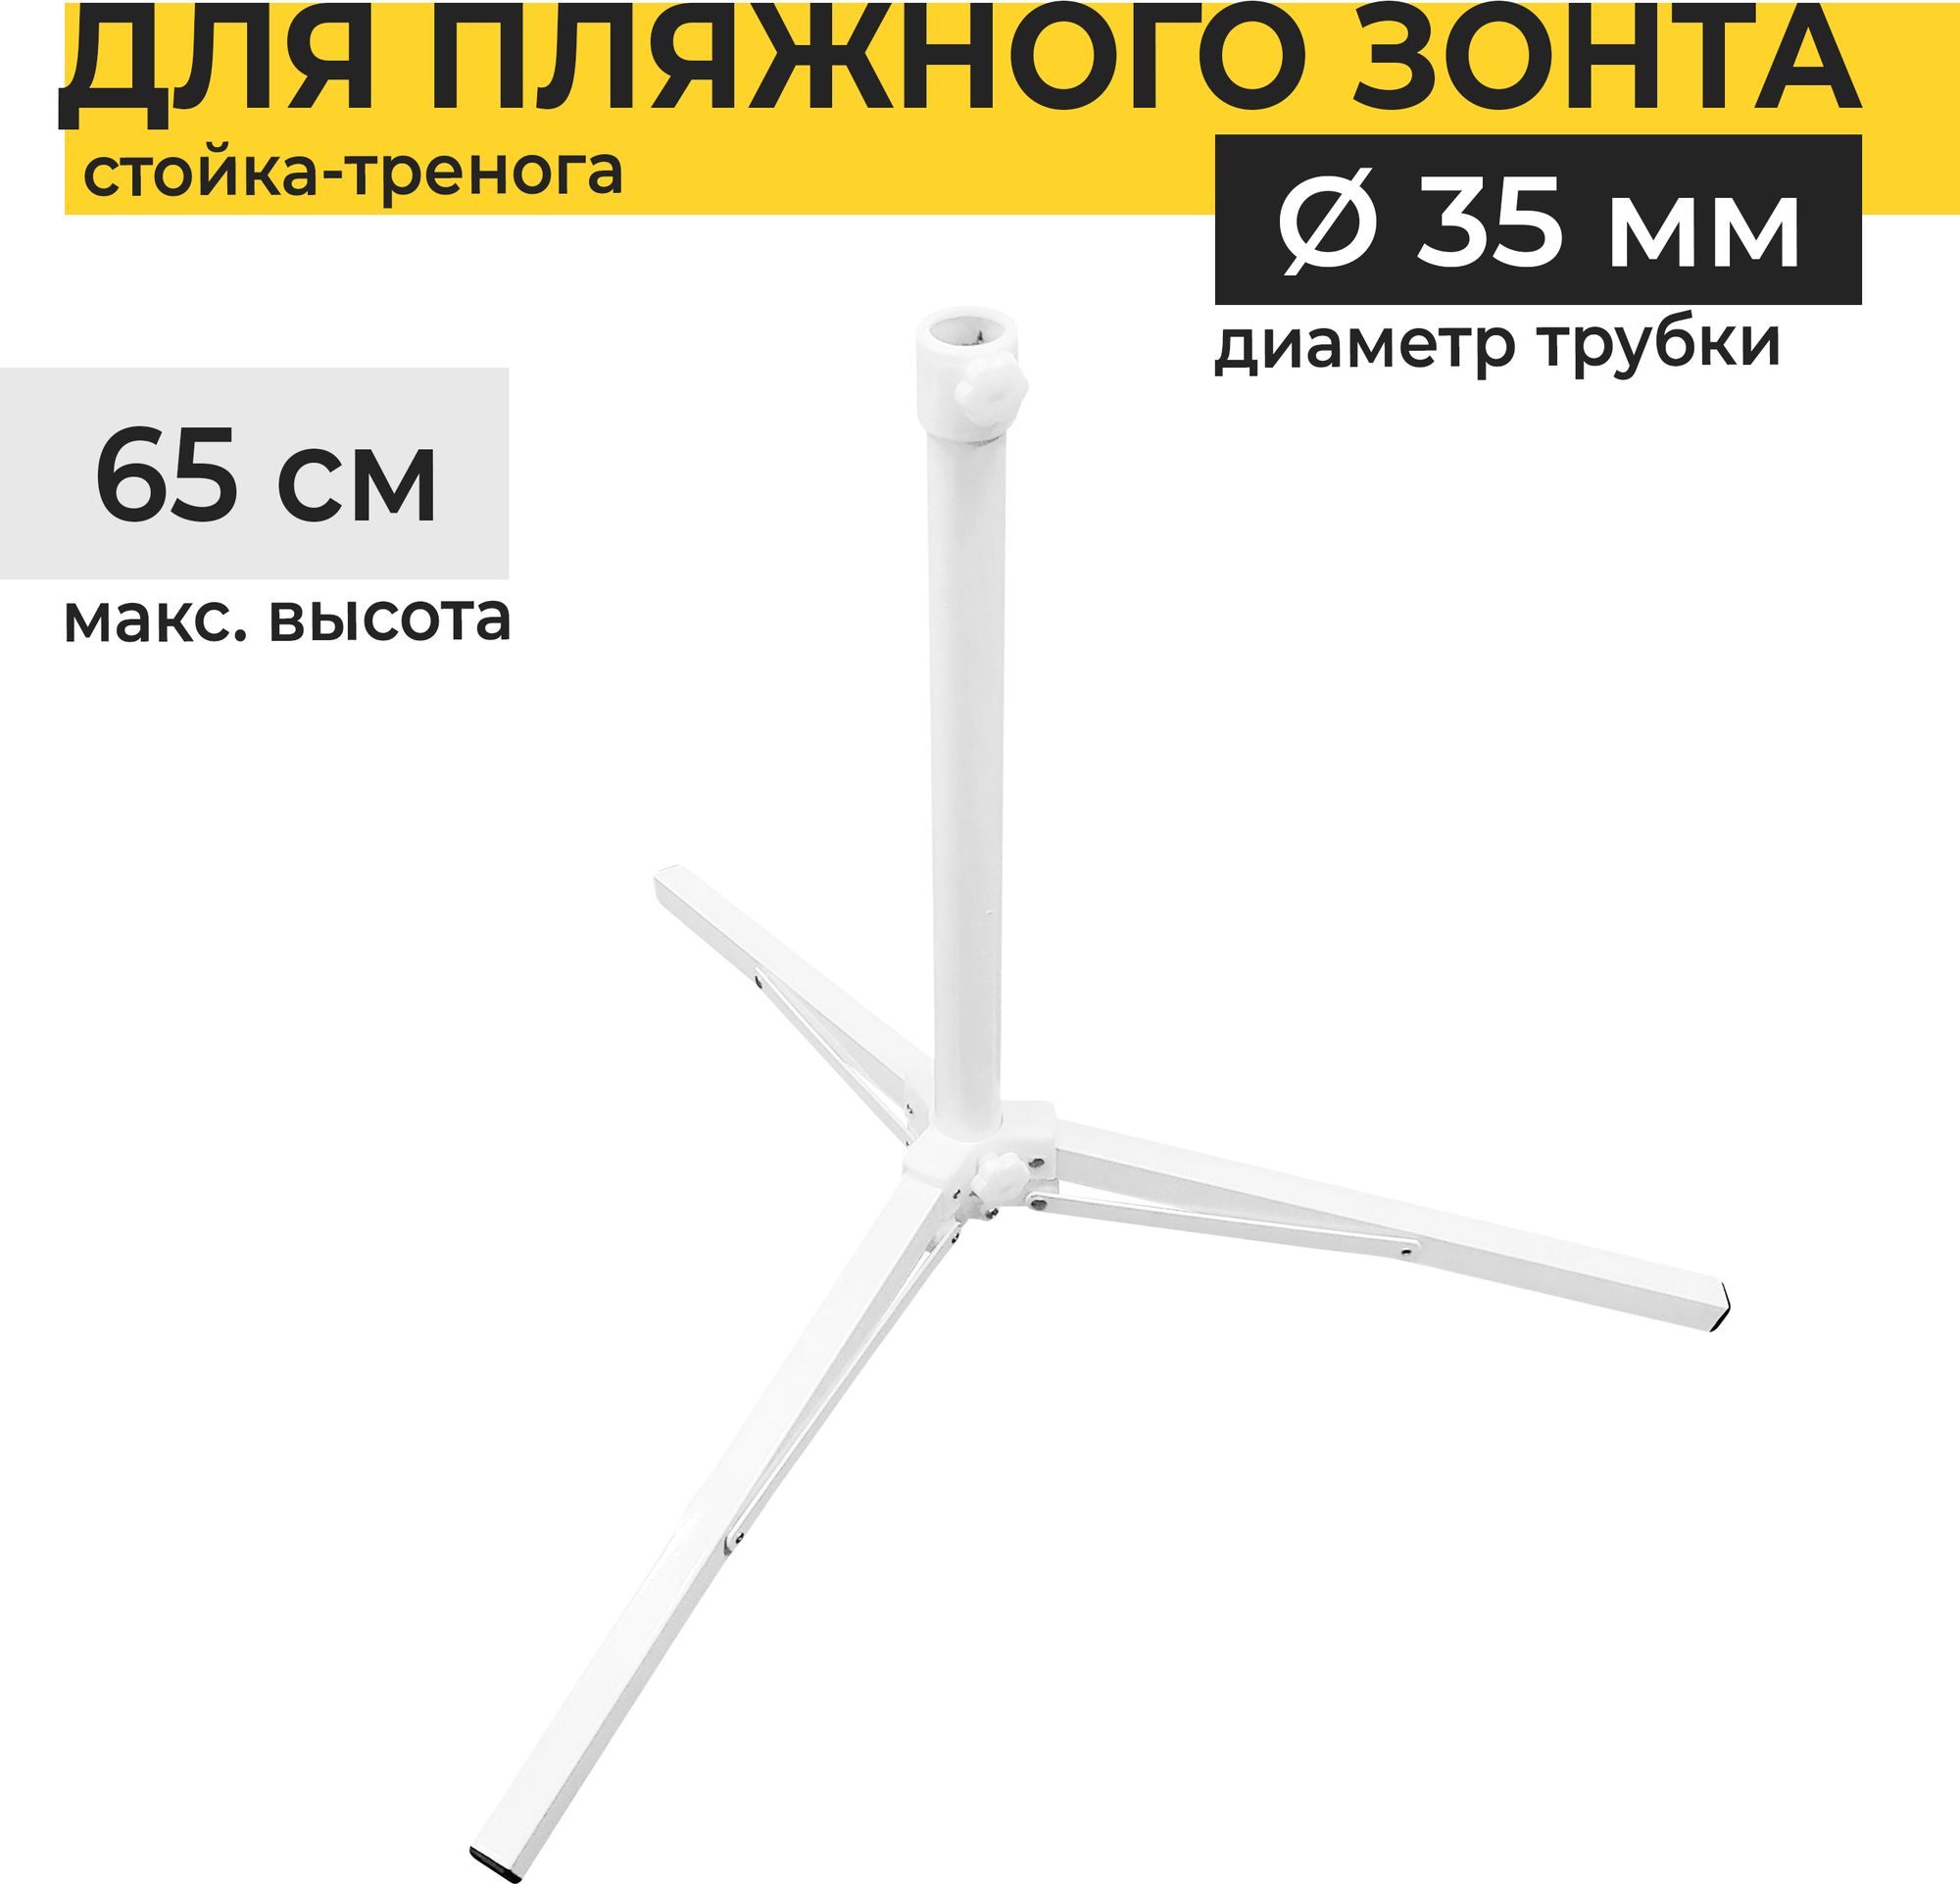 Подставка для пляжного зонта Yoma Home тренога, диаметр трубки 35 мм максимальная высота 65 см - фотография № 1